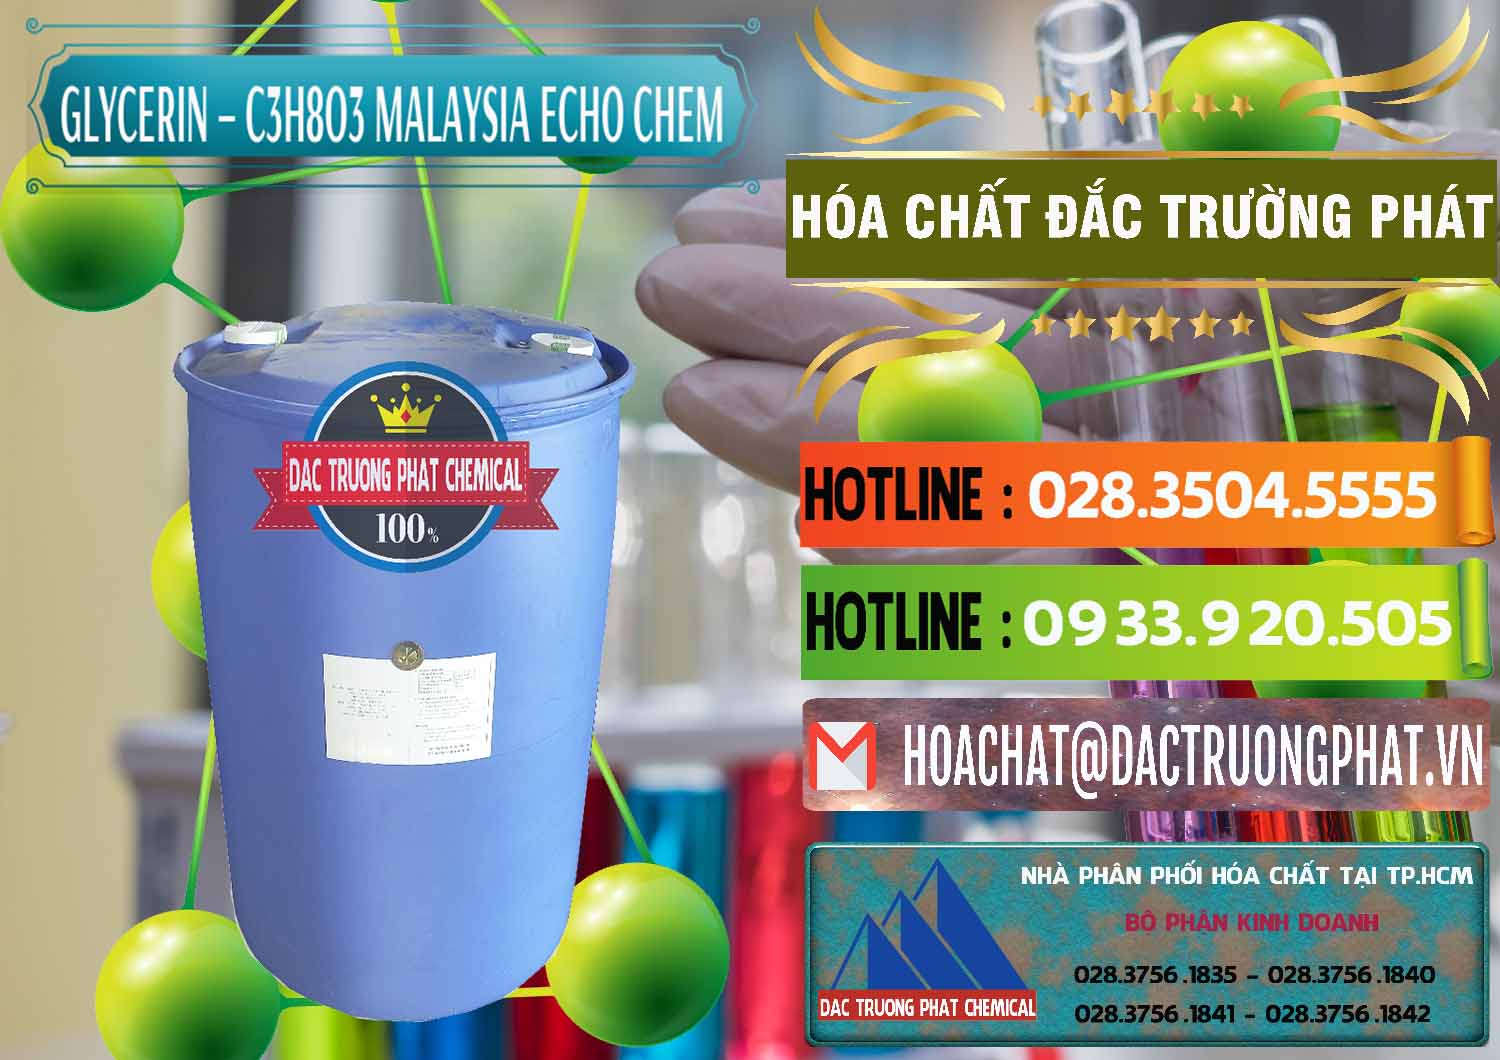 Cty chuyên kinh doanh & bán C3H8O3 - Glycerin 99.7% Echo Chem Malaysia - 0273 - Đơn vị cung cấp ( nhập khẩu ) hóa chất tại TP.HCM - cungcaphoachat.com.vn